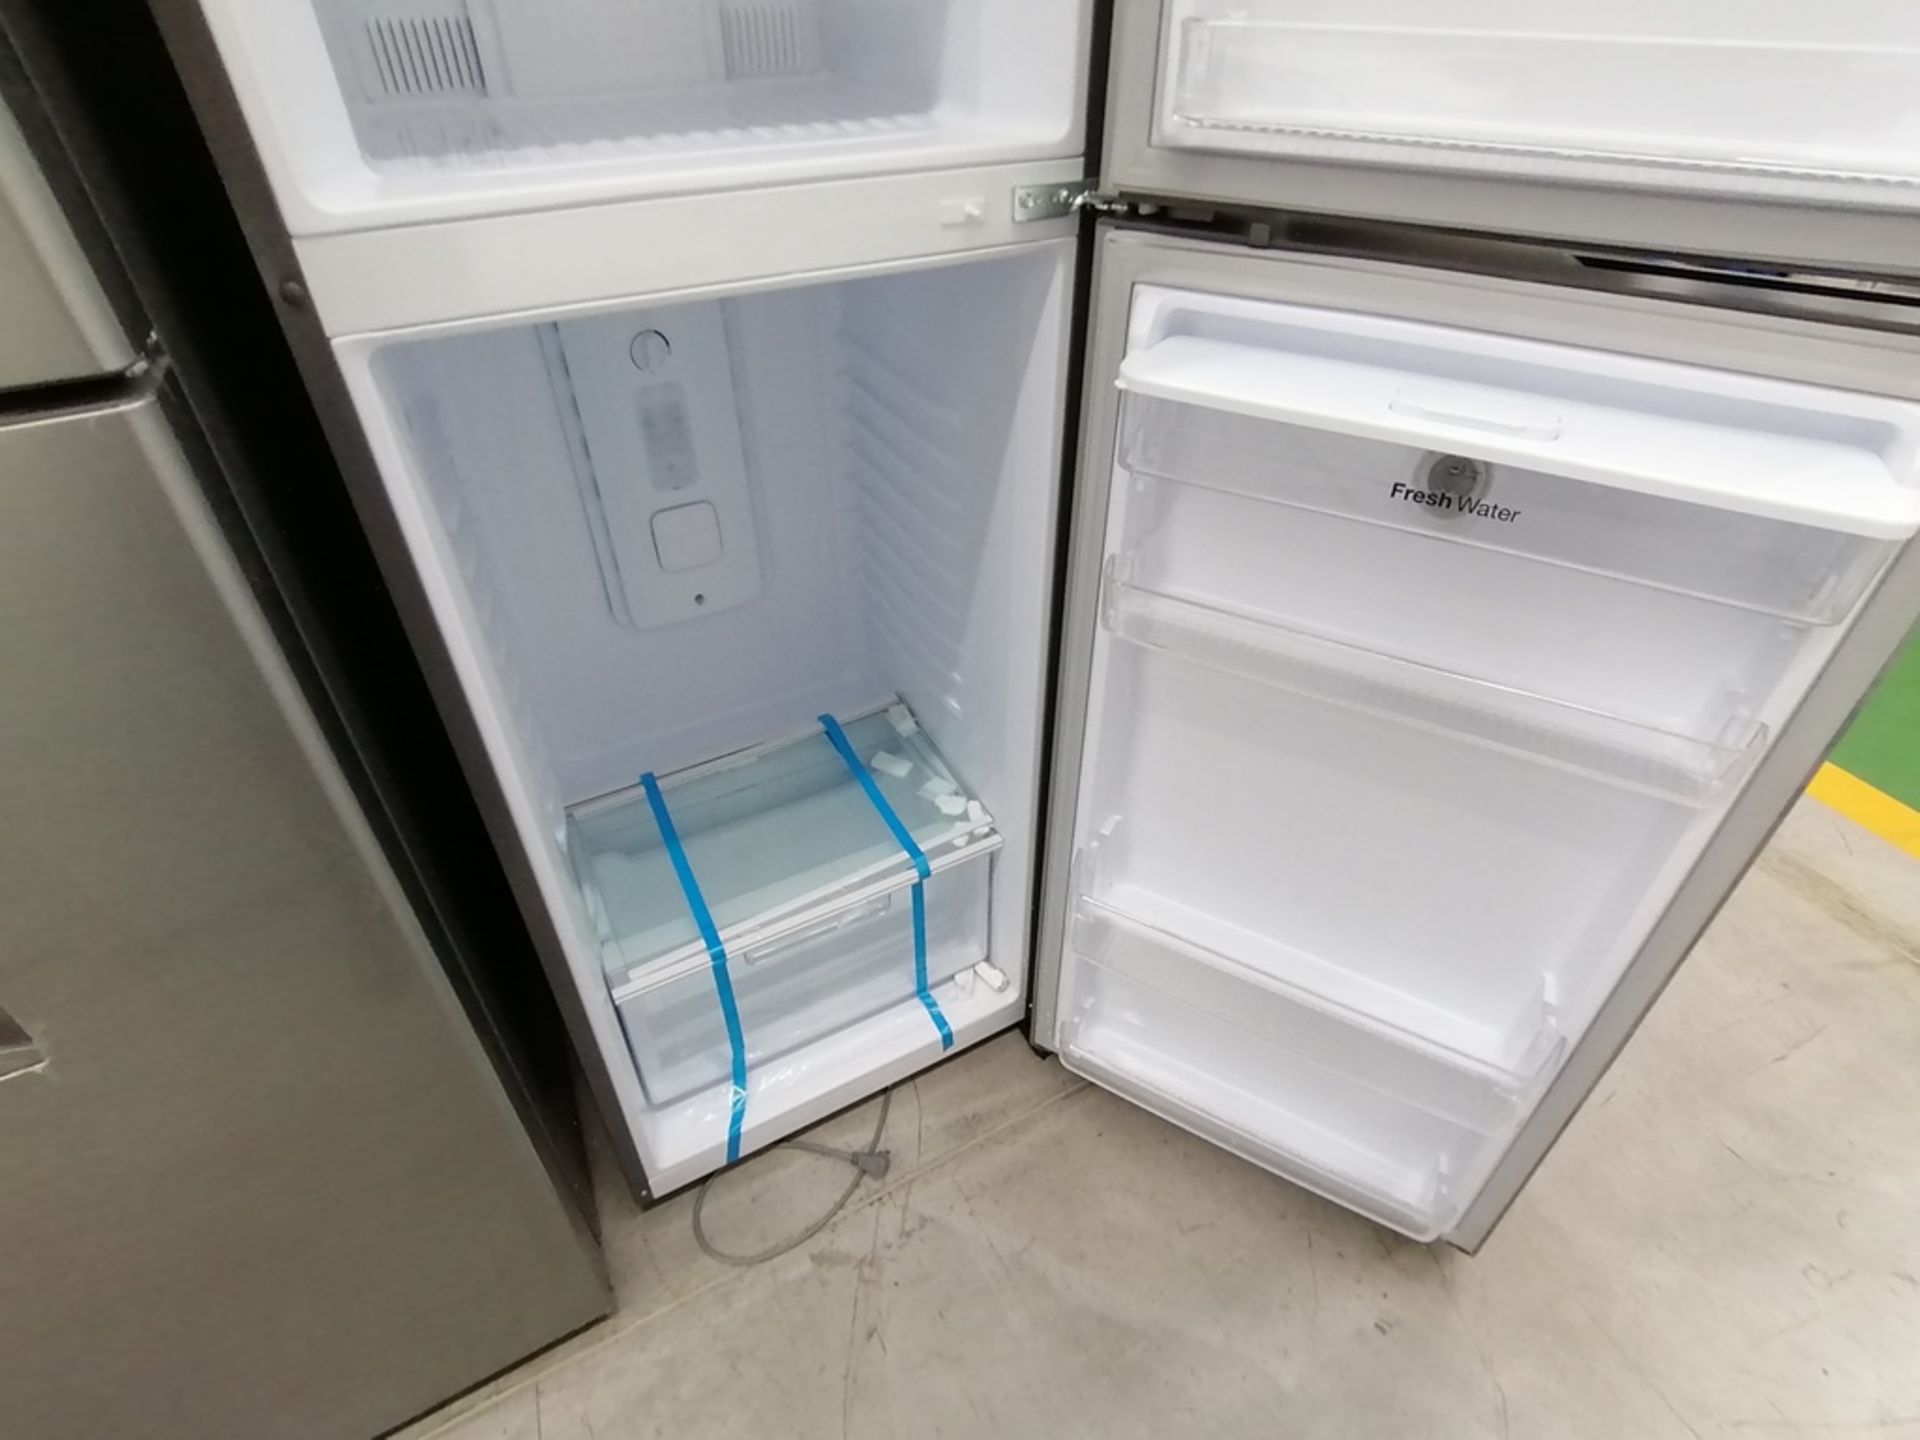 Lote de 2 refrigeradores incluye: 1 Refrigerador con dispensador de agua, Marca Winia, Modelo DFR40 - Image 7 of 15